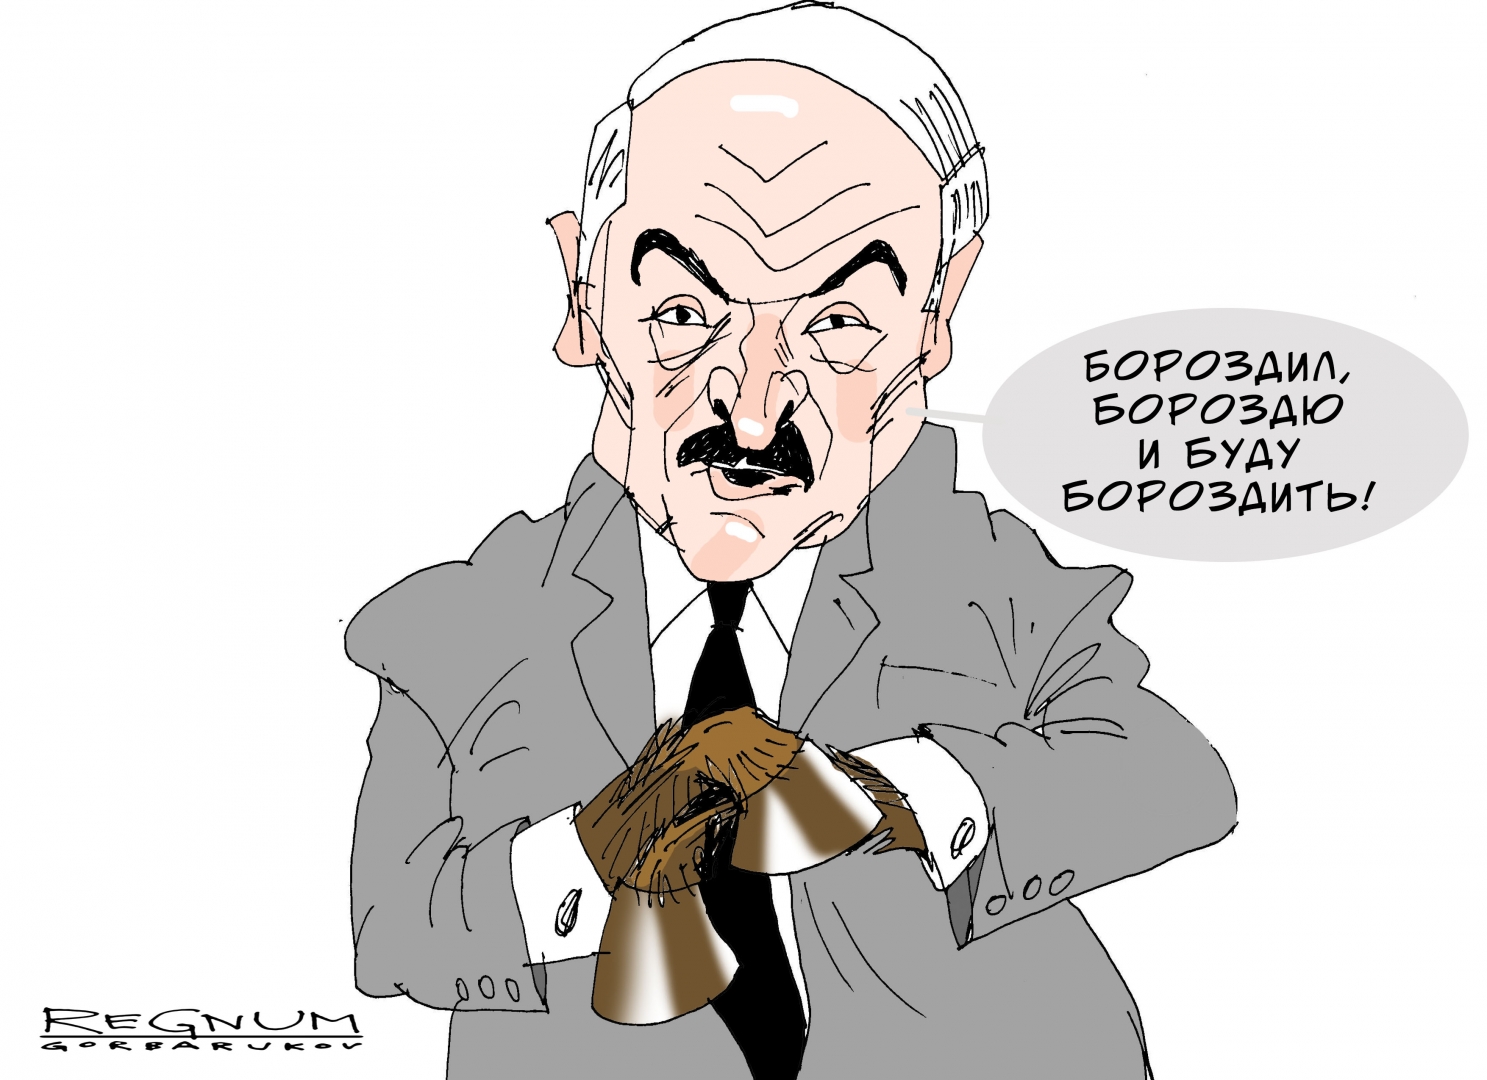 Лукашенко обманул ожидания граждан республики